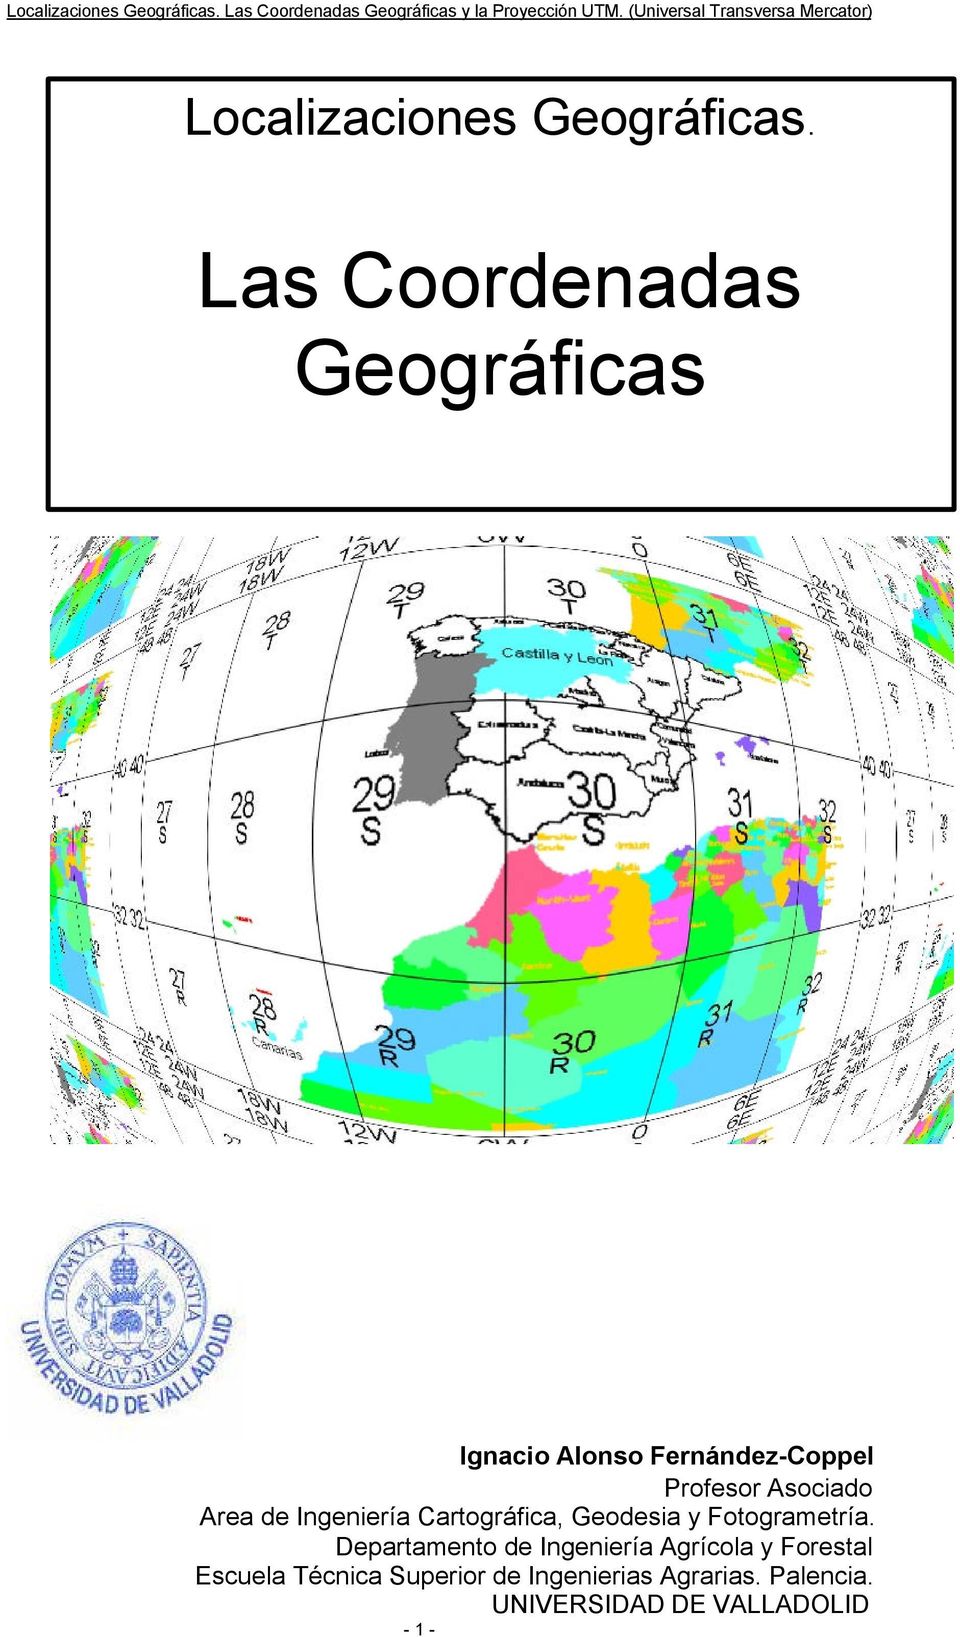 Asociado Area de Ingeniería Cartográfica, Geodesia y Fotogrametría.